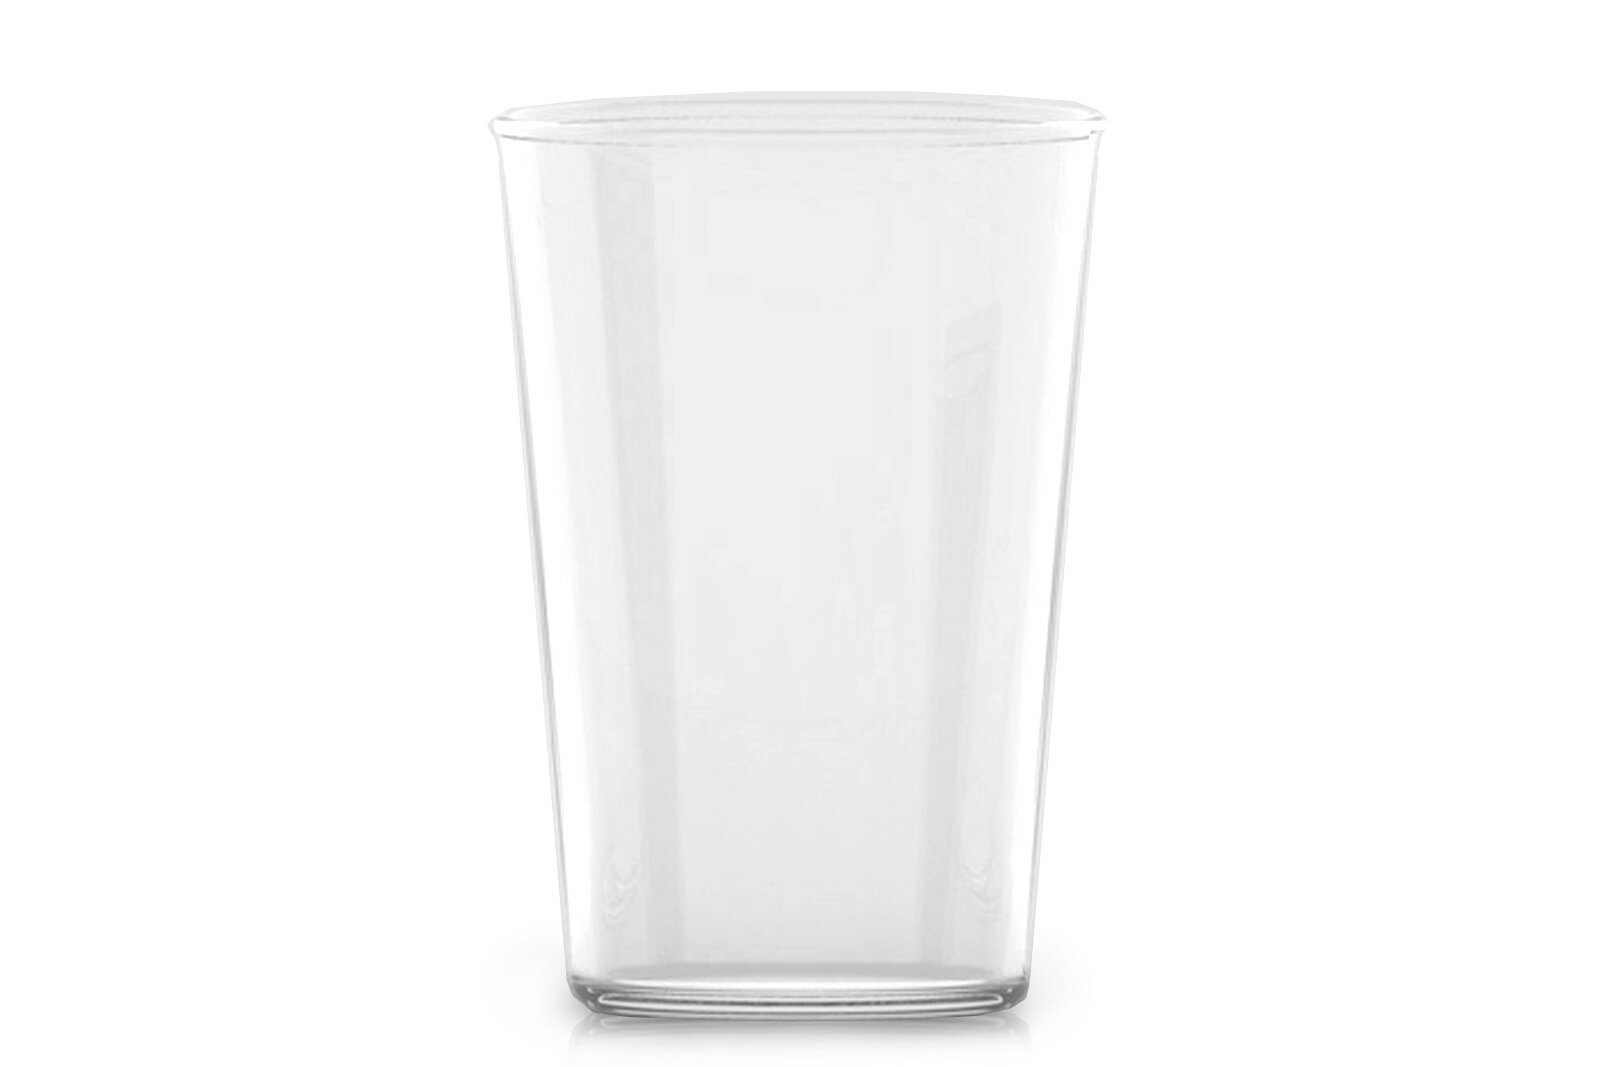 ハリオ ビールグラス THE　THE GLASS TALL 350ml【ザグラス トールサイズ 中川政七商店 耐熱ガラス HARIO ハリオ コーヒーカップ ティーカップ ビールグラス ビアカップ コップ 軽量】